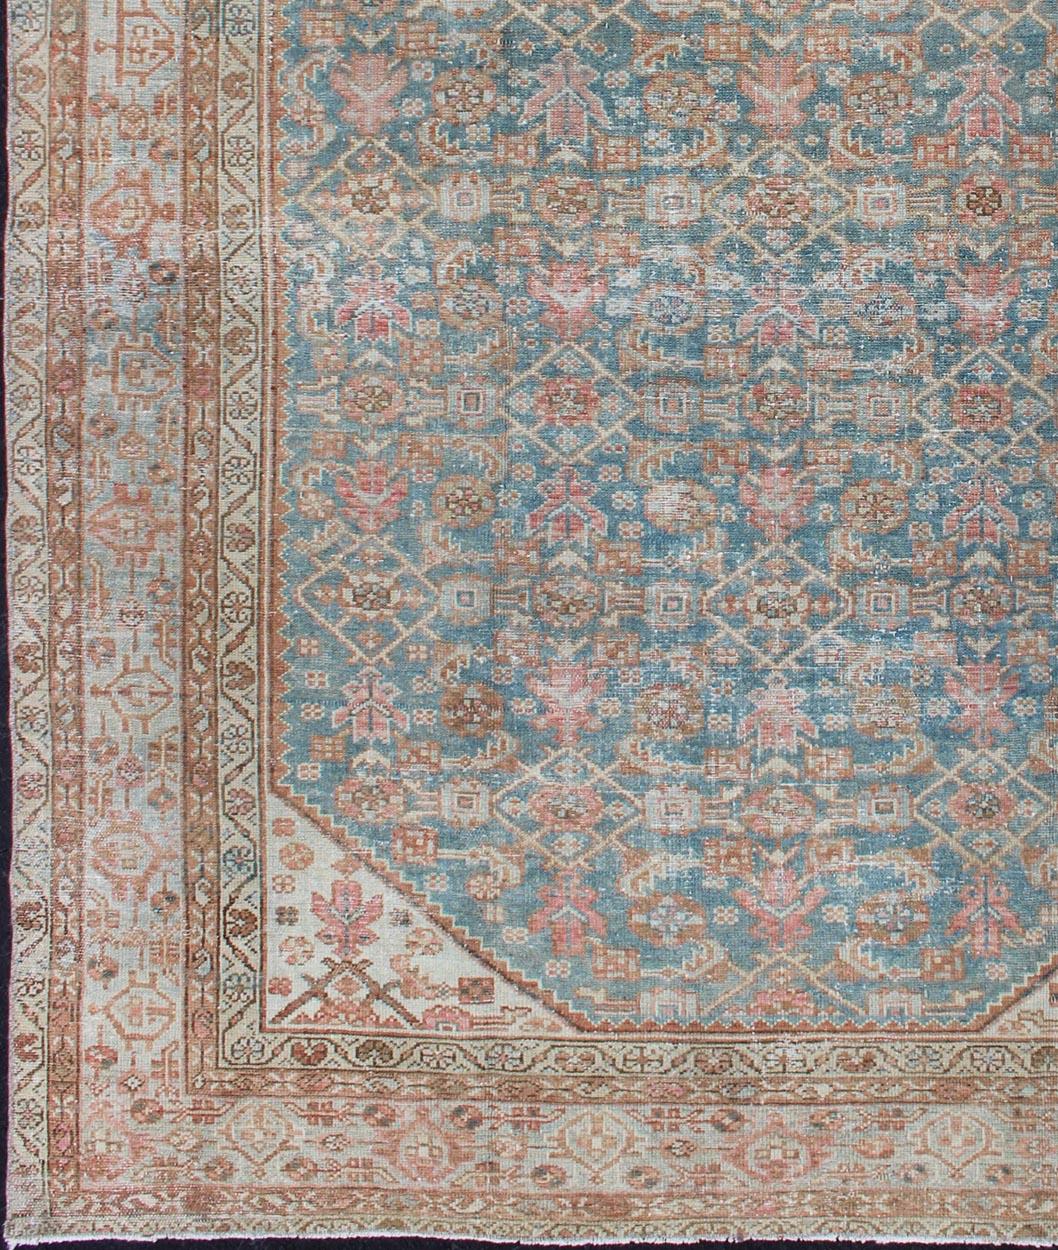 Perserteppich in hellblauen und rosafarbenen Tönen, teppich en-1319, Herkunftsland / Art: Iran / Malayer, um 1920

Dieser schöne antike Malayer-Teppich weist ein zentrales Feld auf, das mit einer sich wiederholenden Anordnung kleiner Motive und